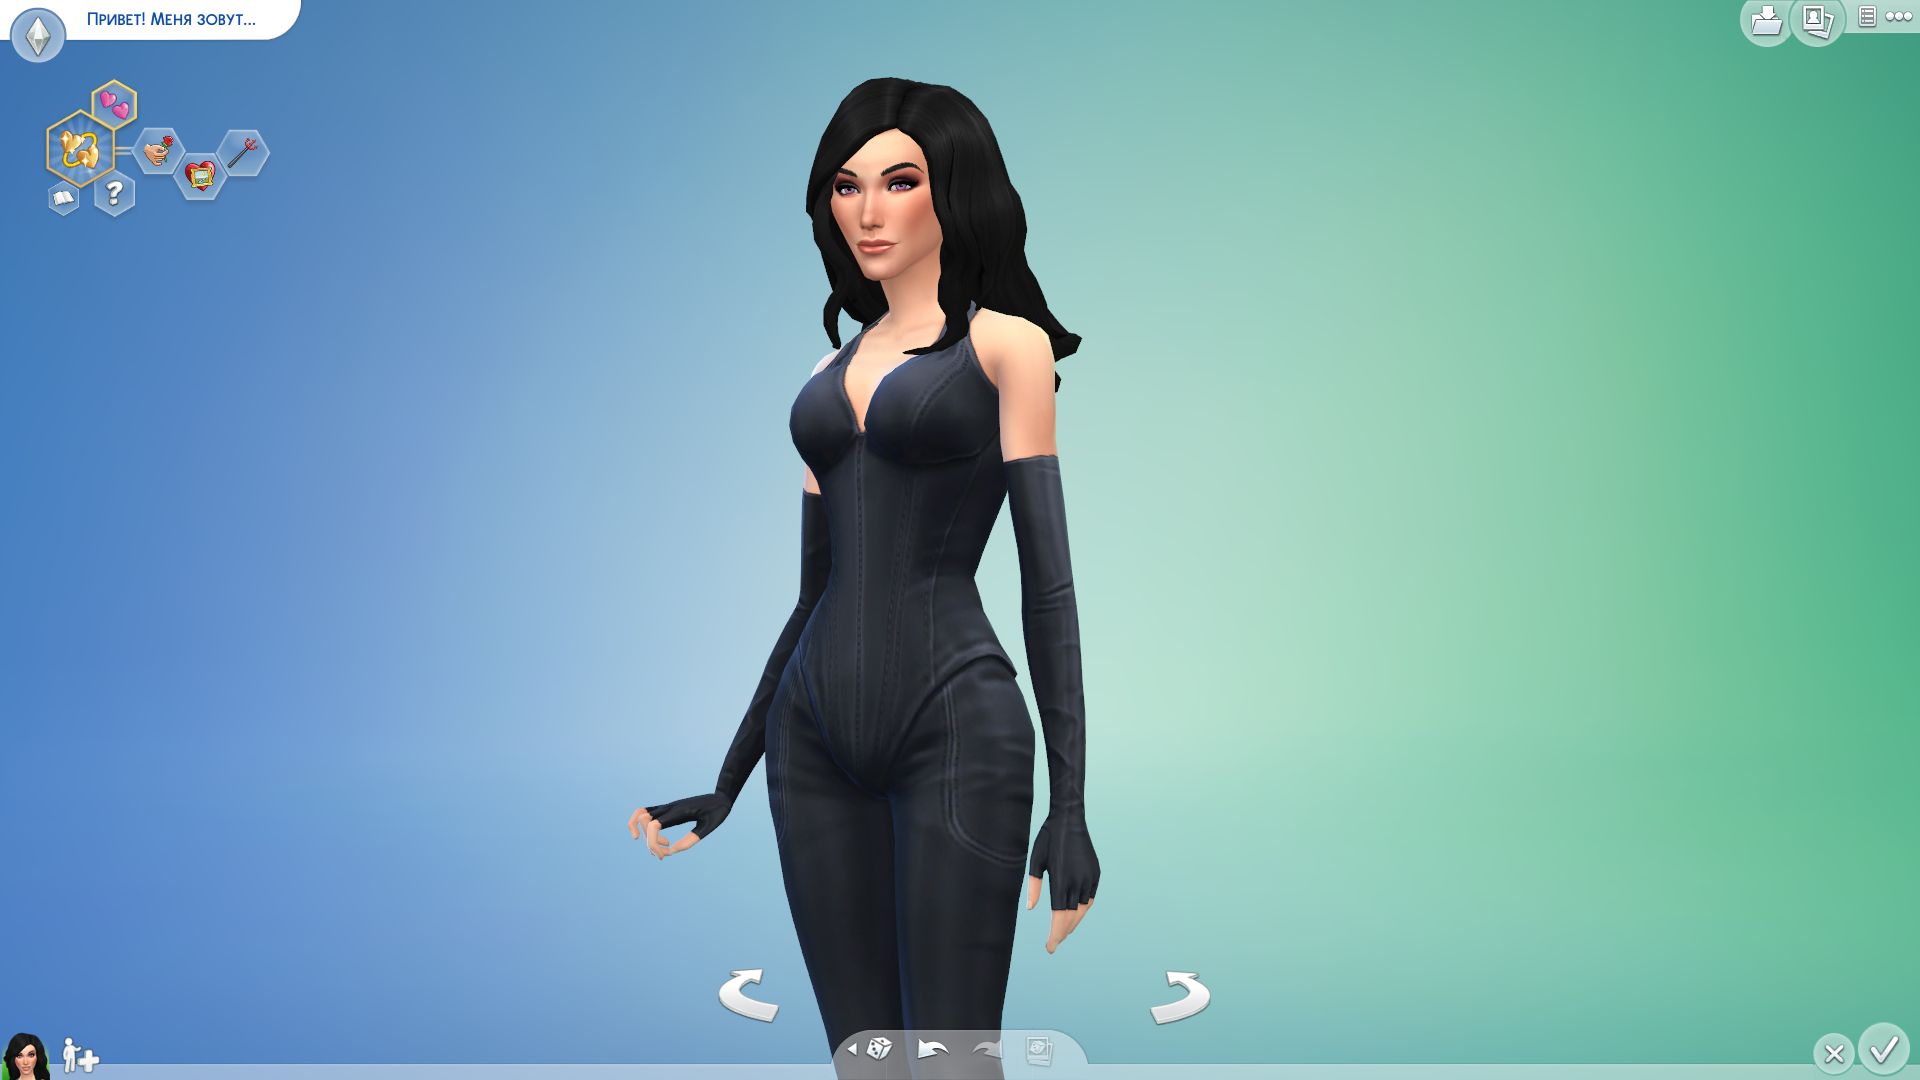 Сексуальная ориентация в The Sims™ 4